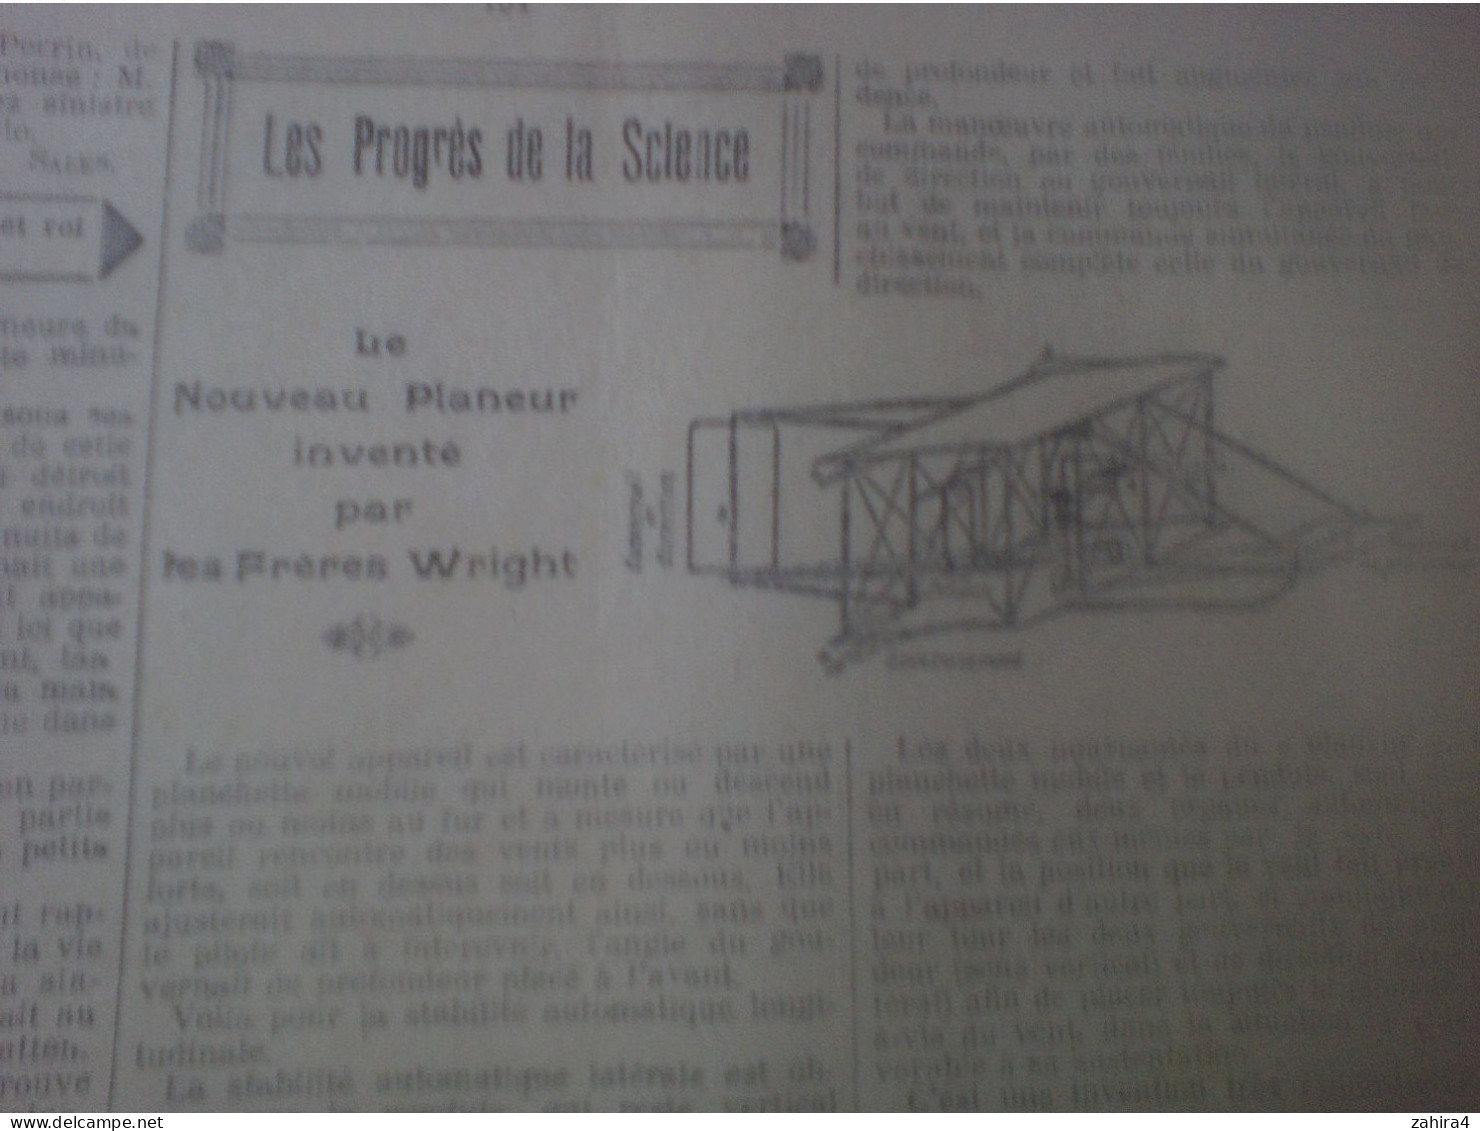 L'Actualité N°617 Dinosaur avant le déluge Petit métier breton Dirigeable Tripoli Lortac Auto corbillard Avion Wright